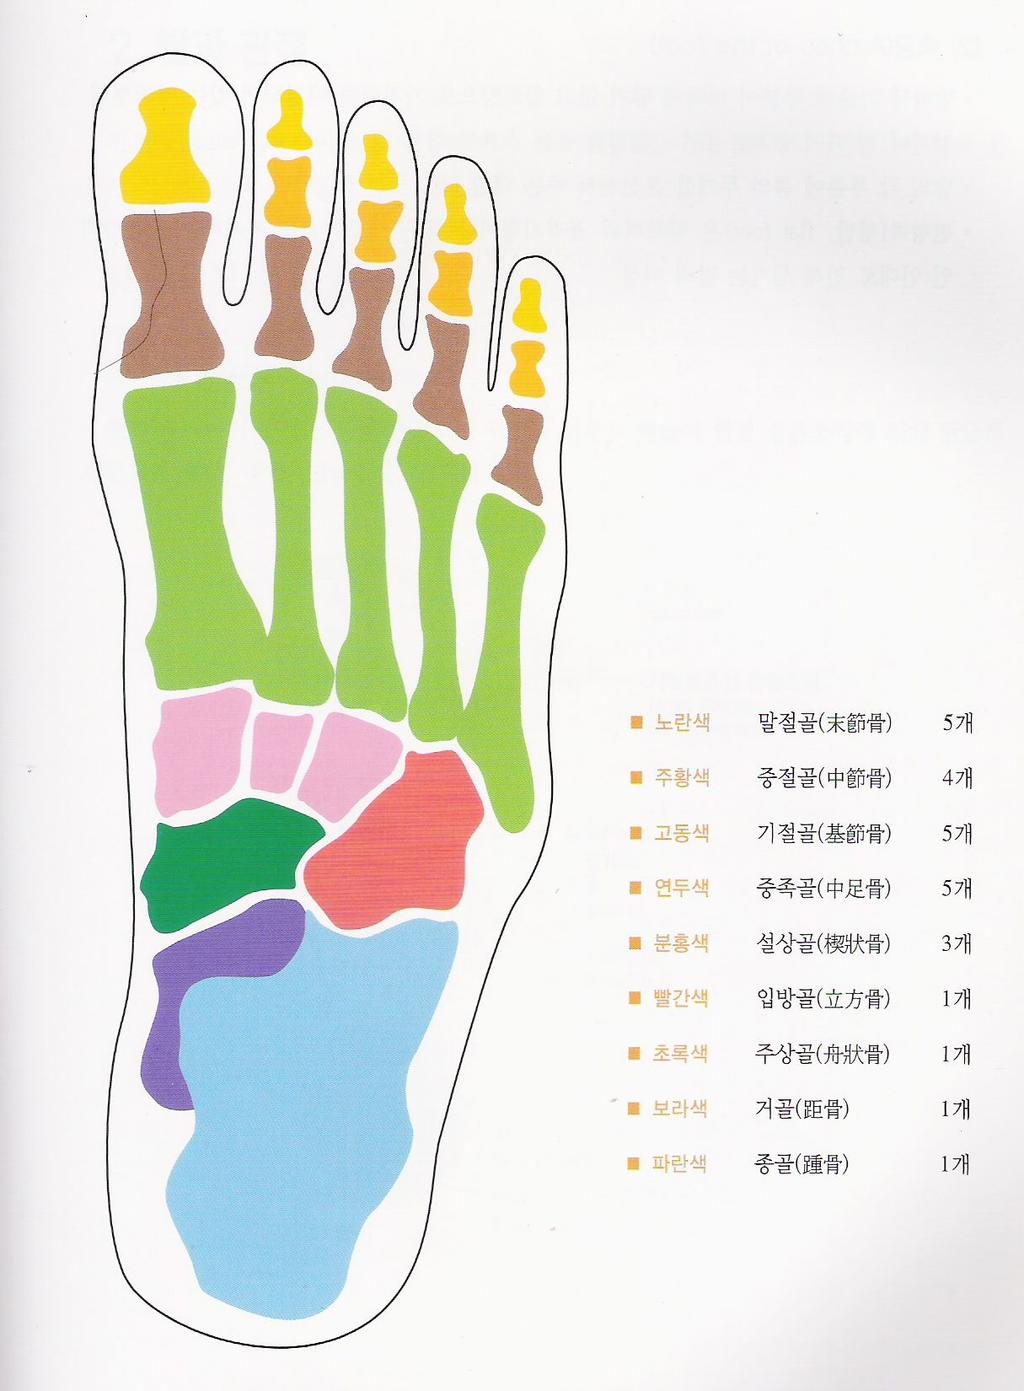 1 주한방발반사요법이란 분, 발가락을구성하는족지골 ( 足趾骨 ) 14 개로이루어져있다.